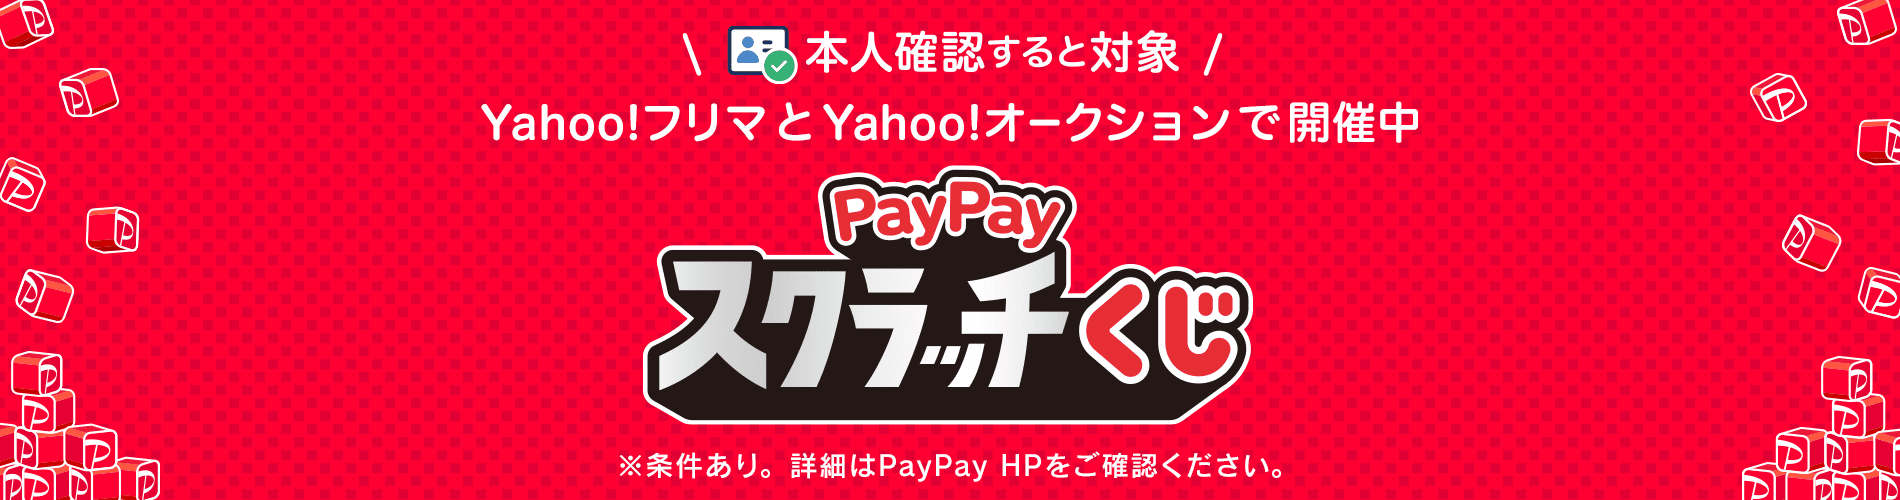 Yahoo!フリマとYahoo!オークションで開催中、PayPayスクラッチくじ